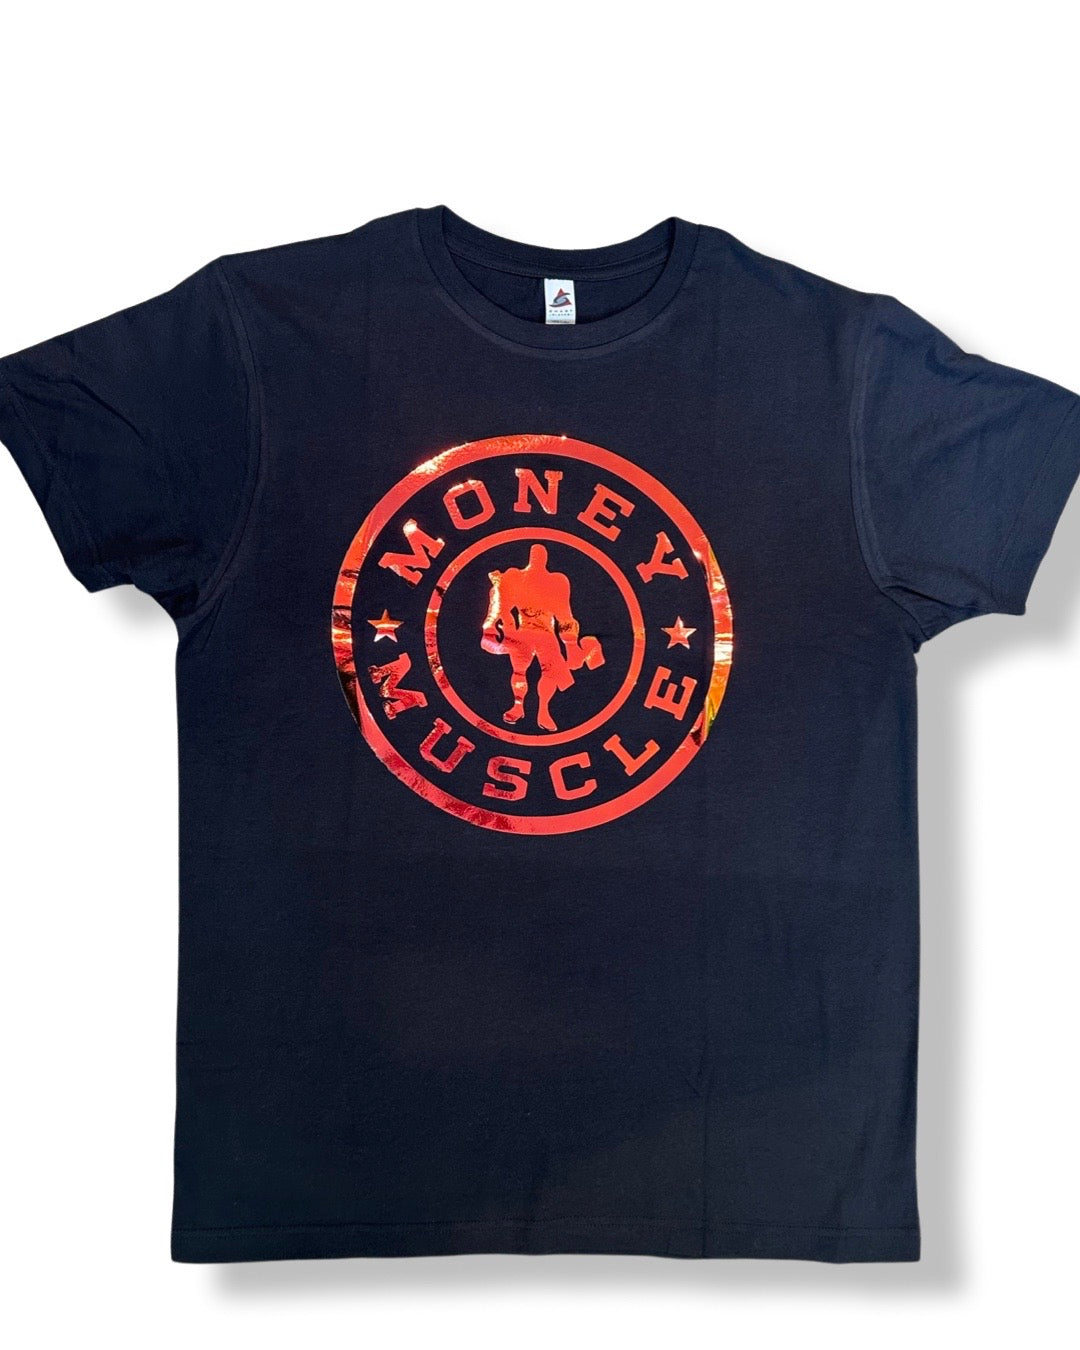 Money & Muscle T-Shirt (CHAMELEON)